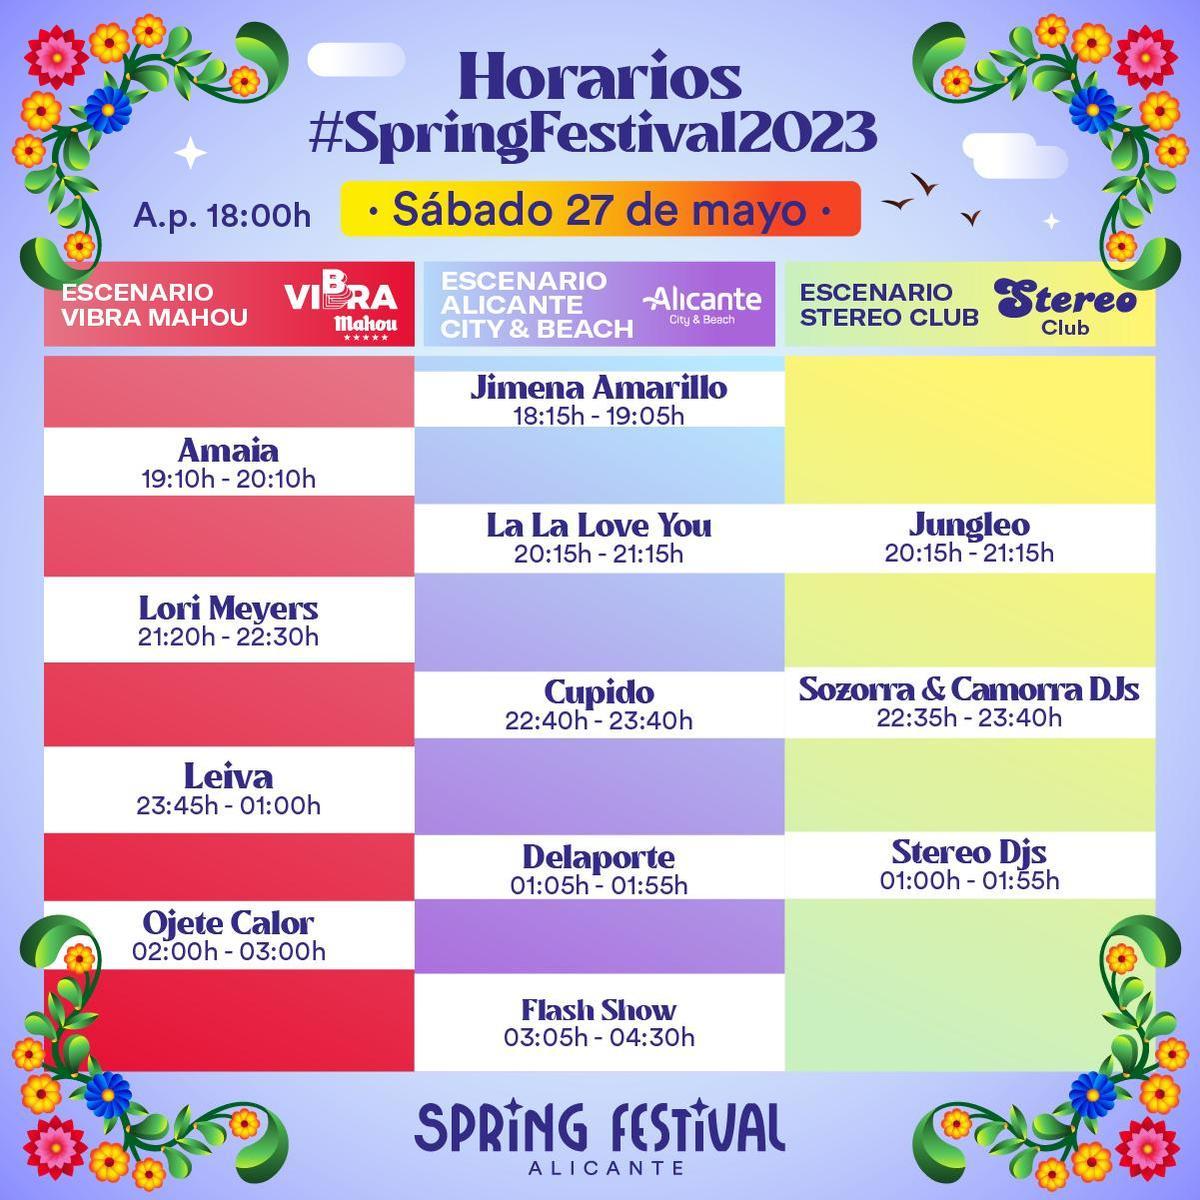 Horarios del Spring Festival 2023: Sábado 27 de mayo